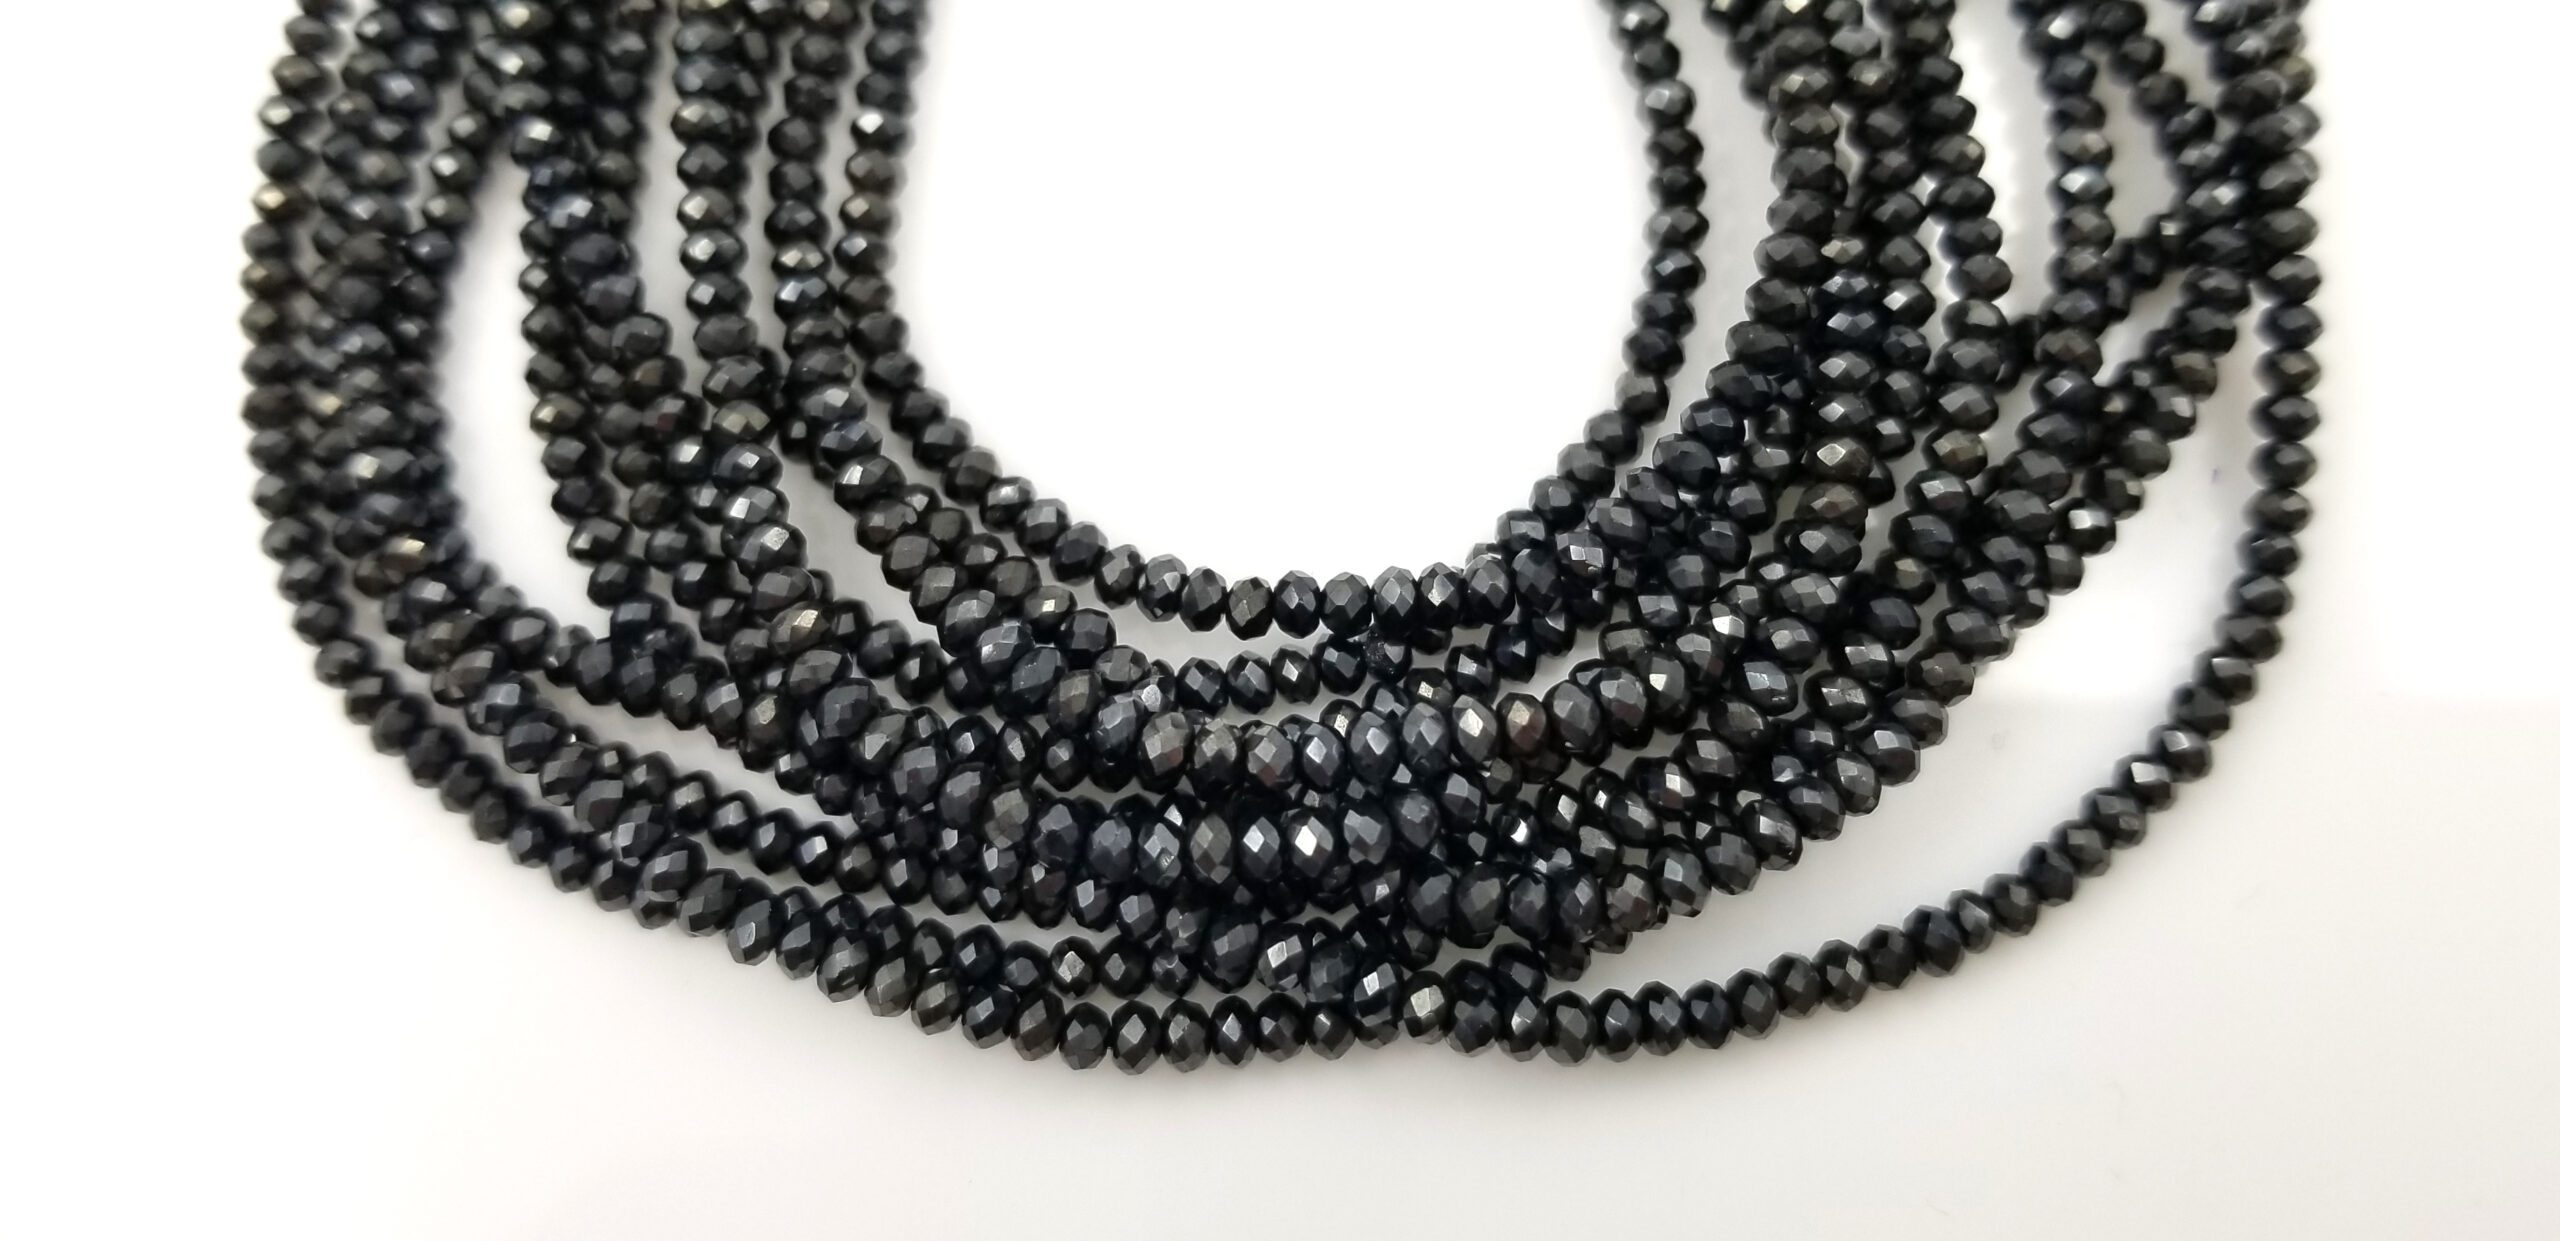 3mm Dark Mystic Spinel, Black Spinel Beads Faceted Rondelle Gemstone ...